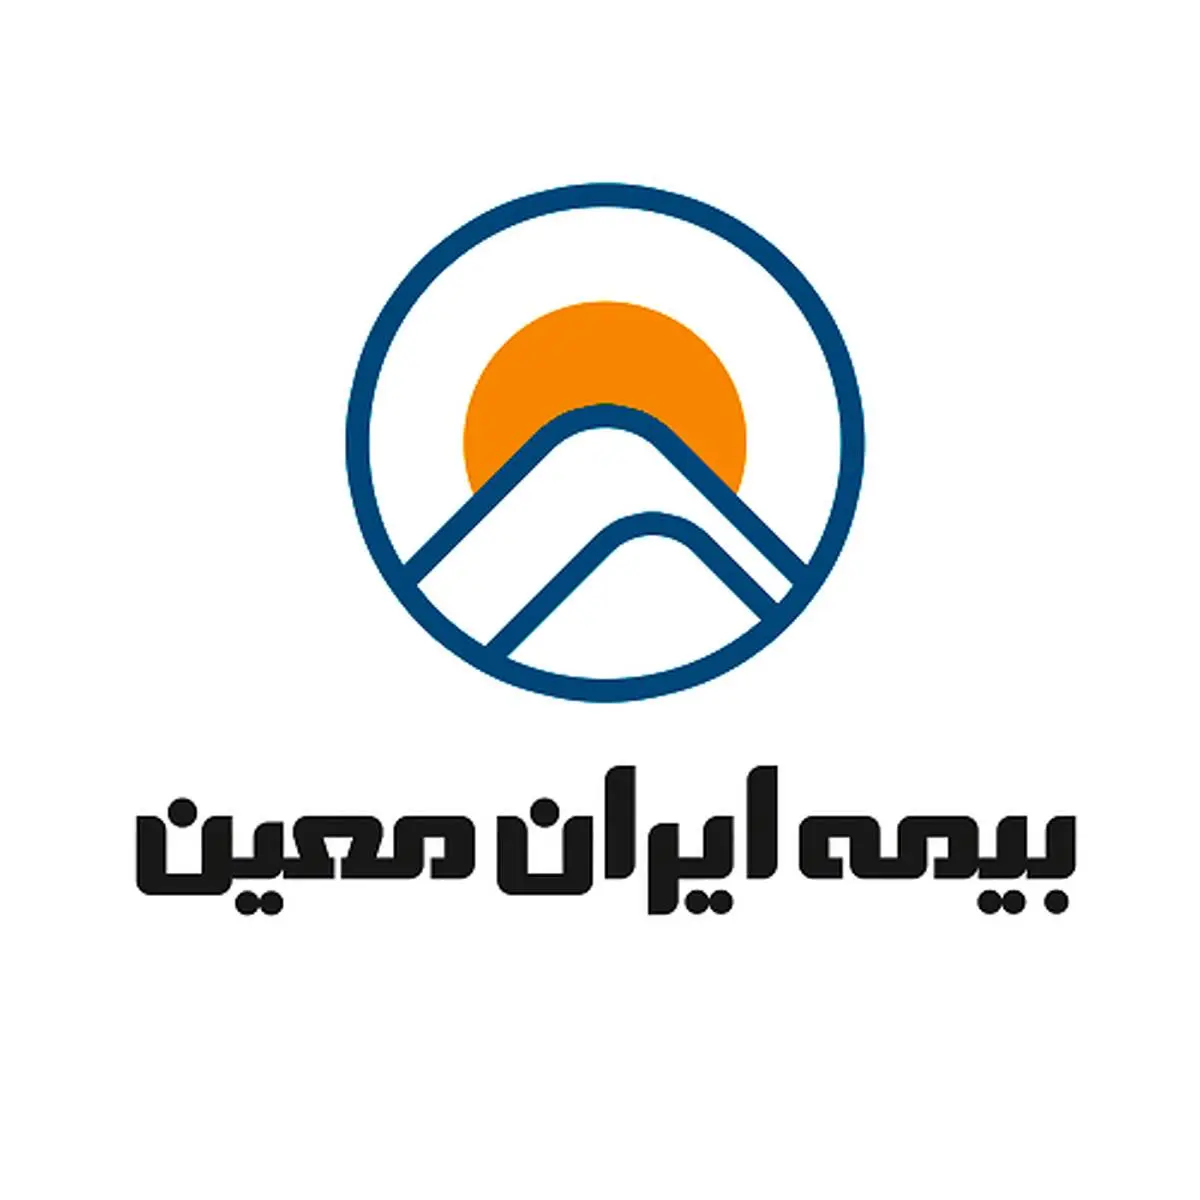 بیمه ایران معین چهارهزار میلیارد ریالی شد